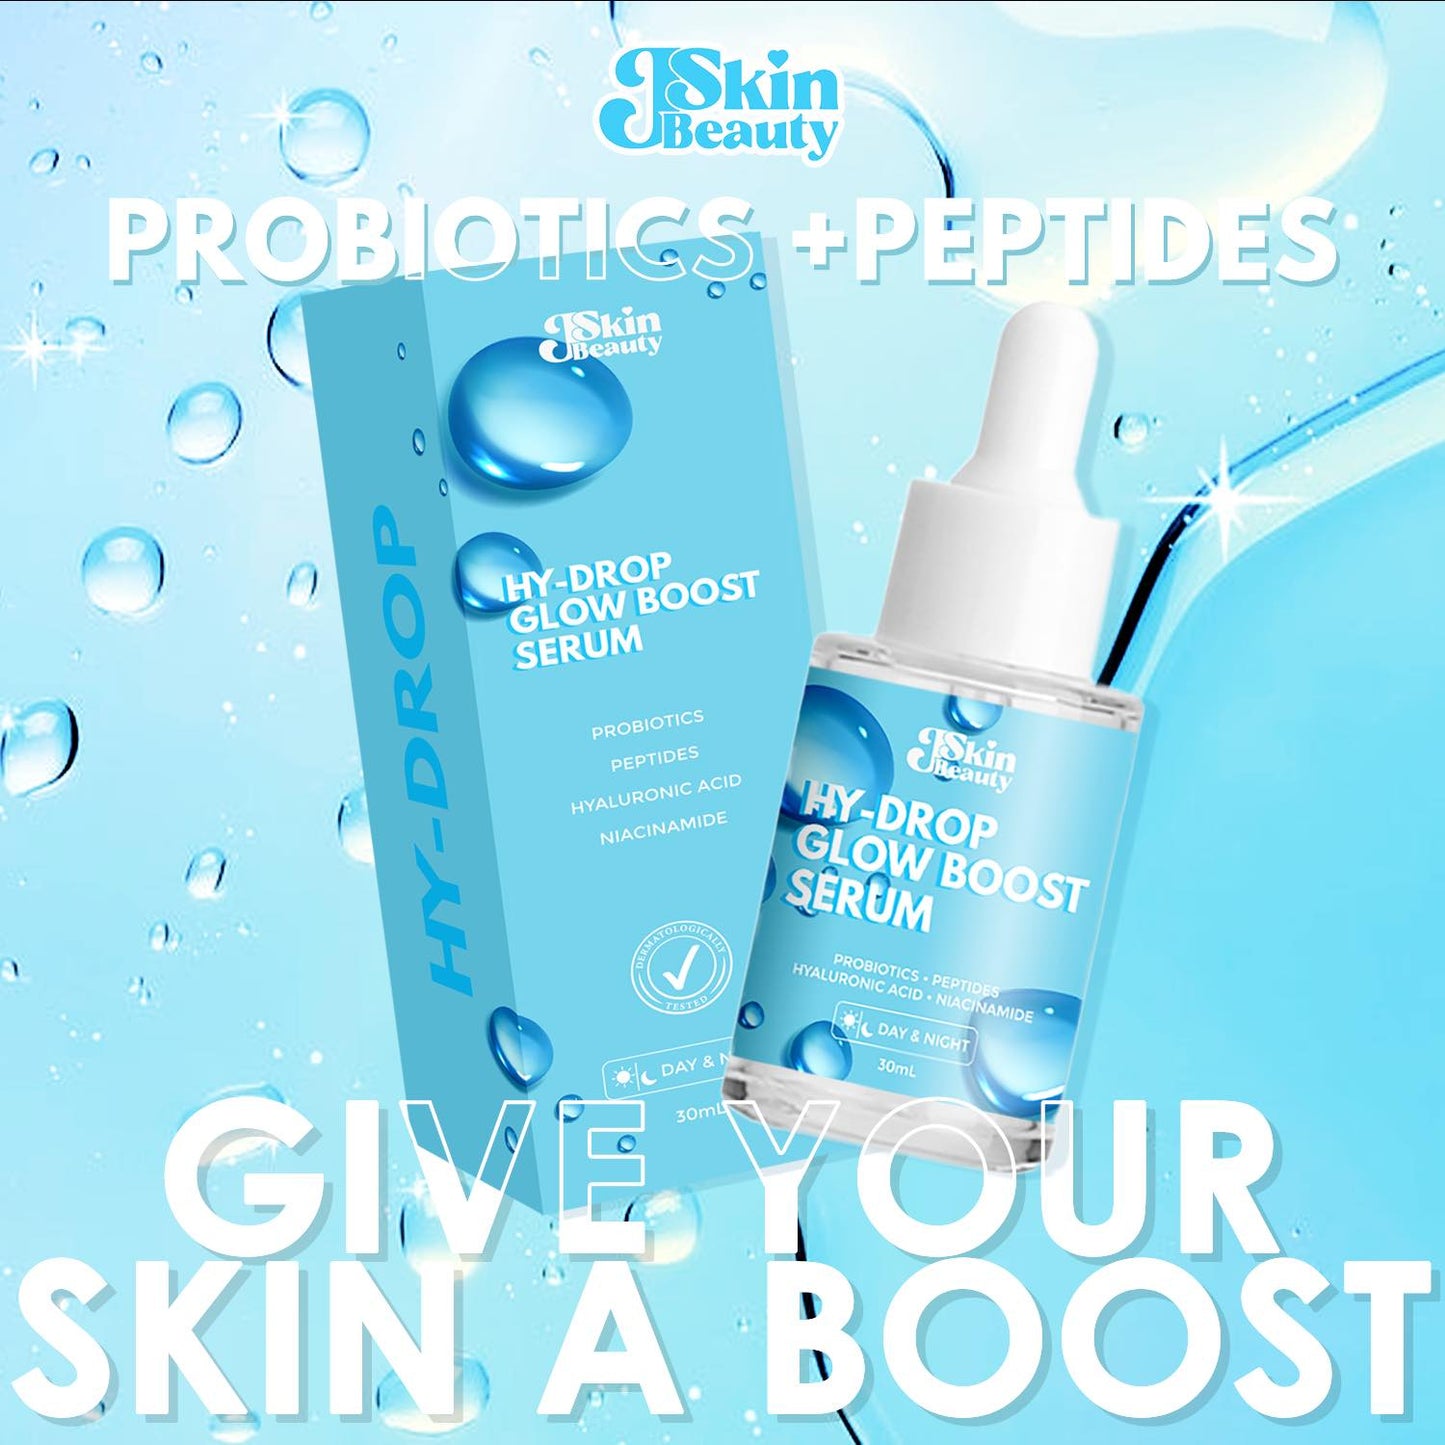 J Skin Beauty Hy-Drop Glow Boost Serum